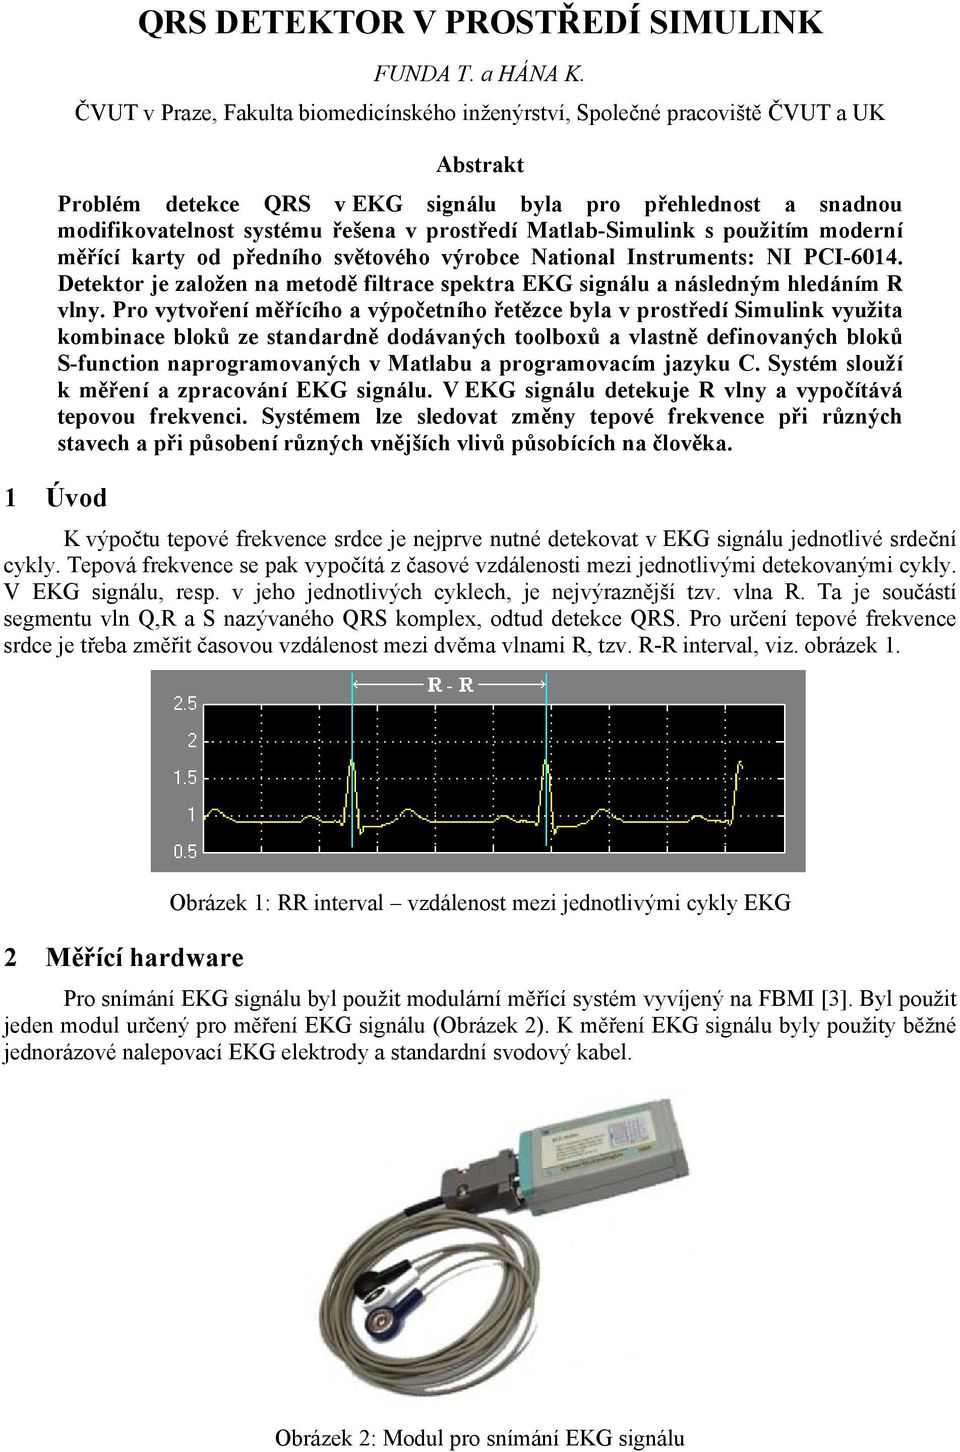 Matlab-Simulink s použitím moderní měřící karty od předního světového výrobce National Instruments: NI PCI-6014. Detektor je založen na metodě filtrace spektra EKG signálu a následným hledáním R vlny.